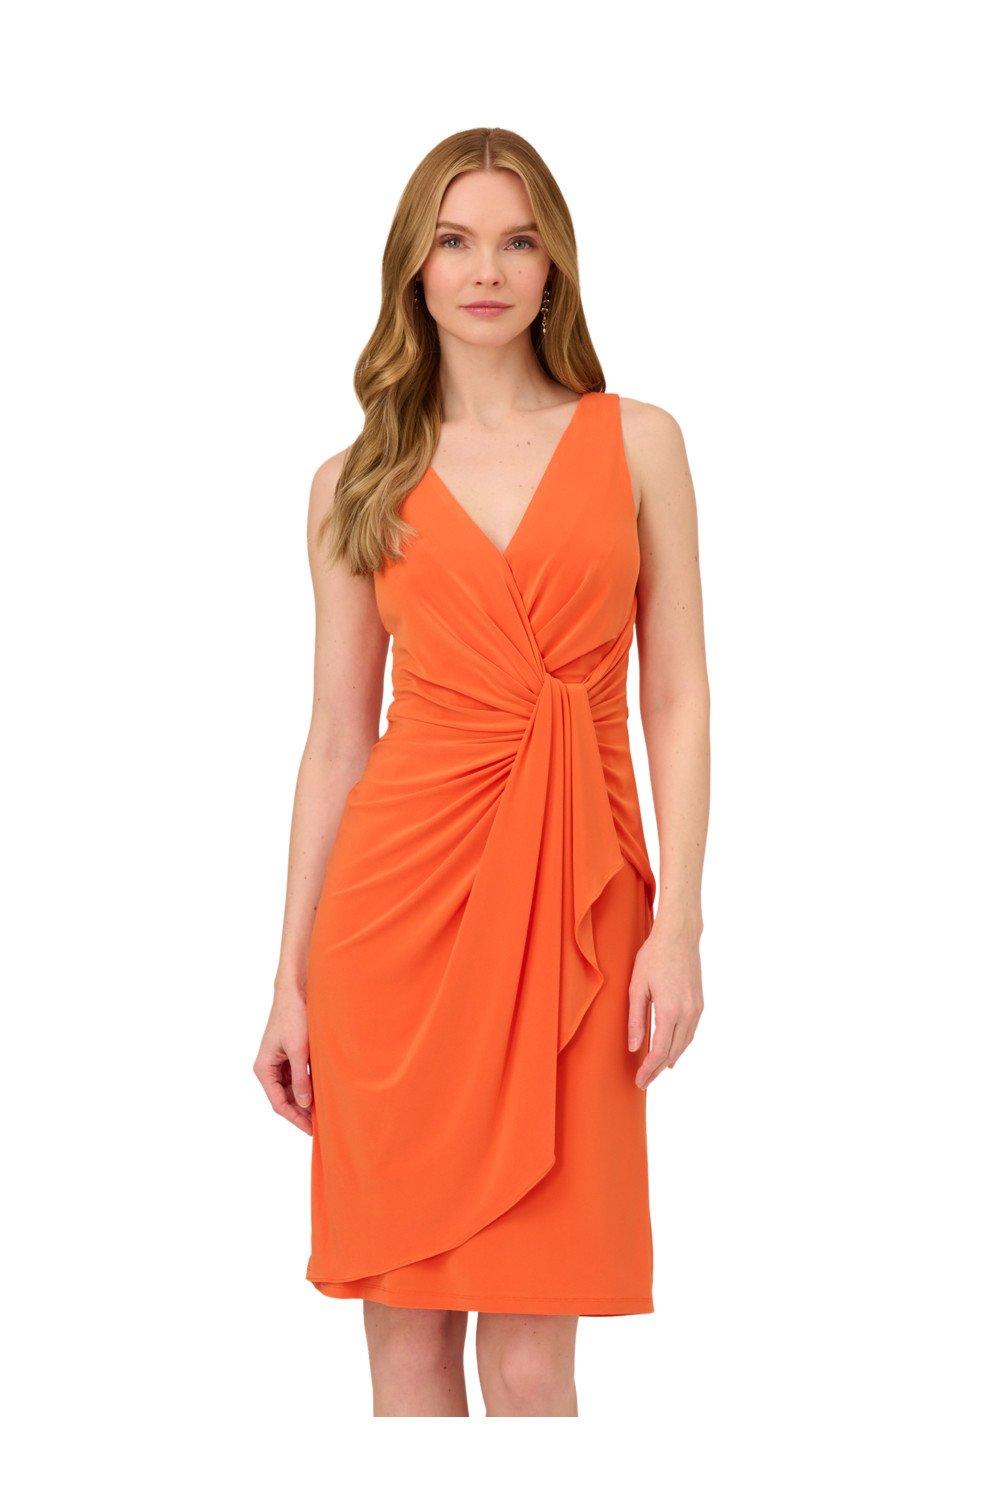 Короткое драпированное платье из джерси Adrianna Papell, оранжевый платье короткое с v образным вырезом без рукавов с принтом 2 m синий